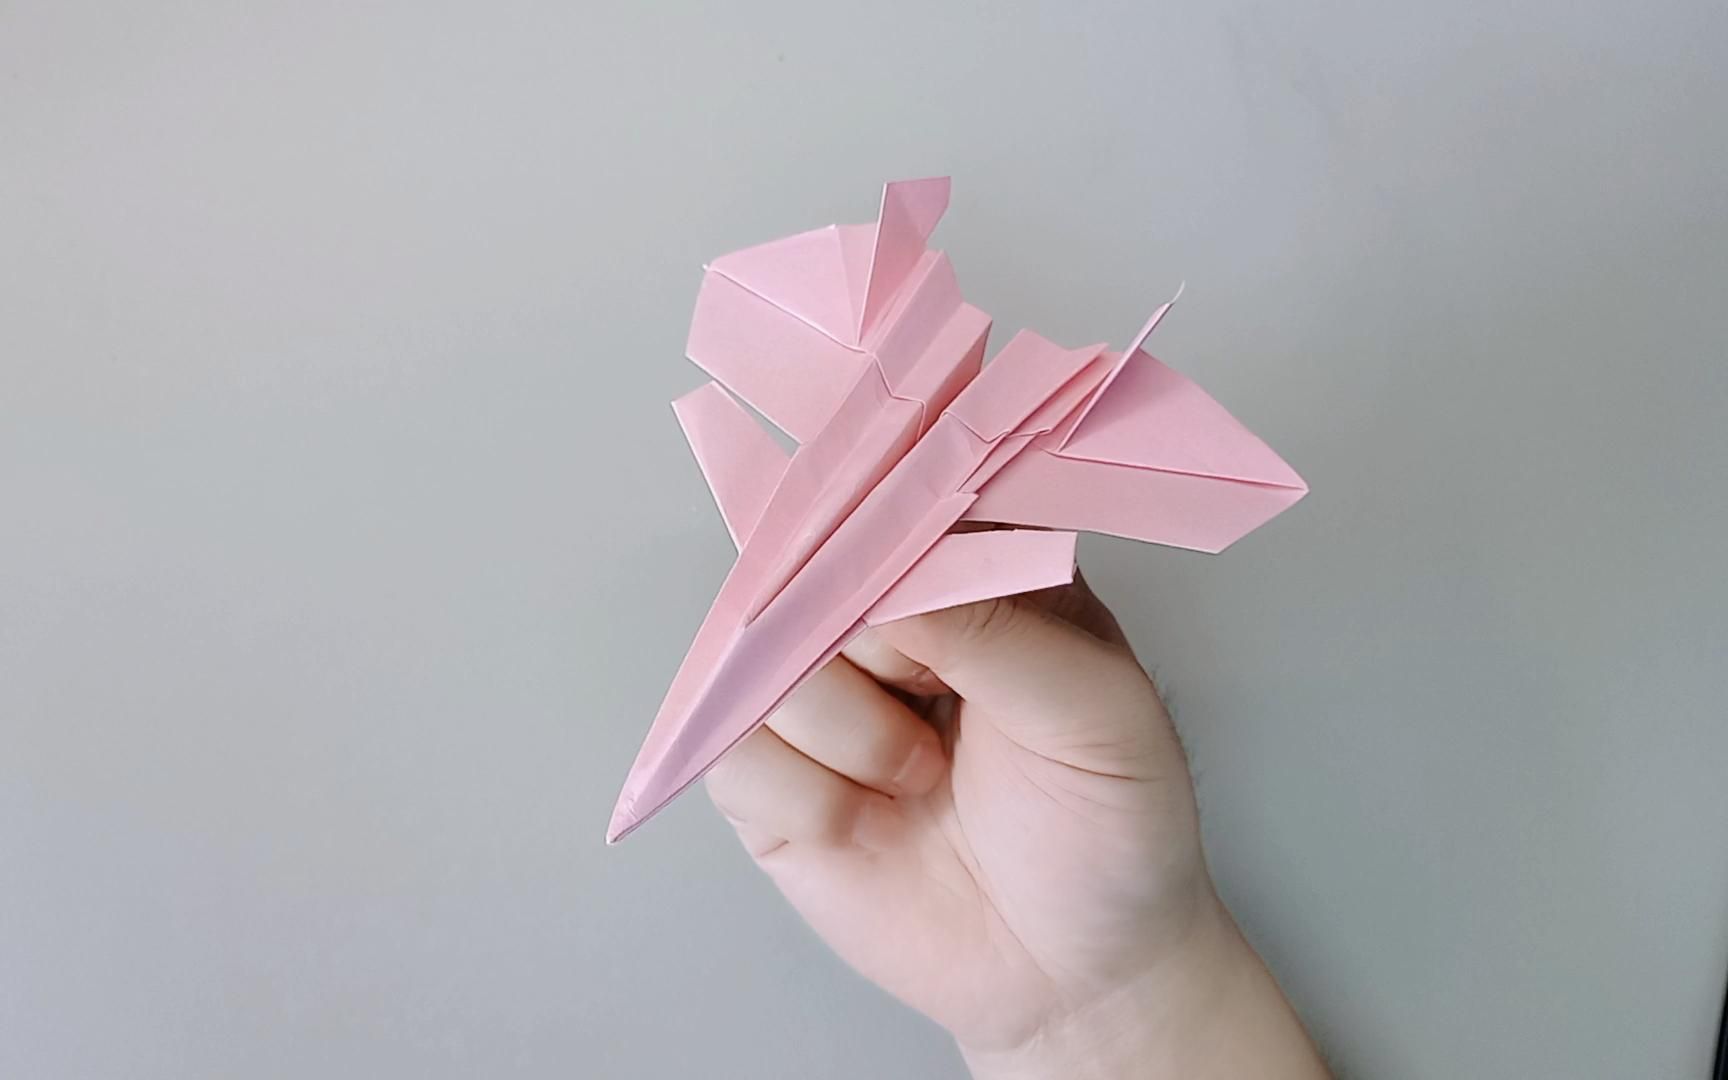 歼20仿真折纸飞机,这应该是全网最像的纸飞机